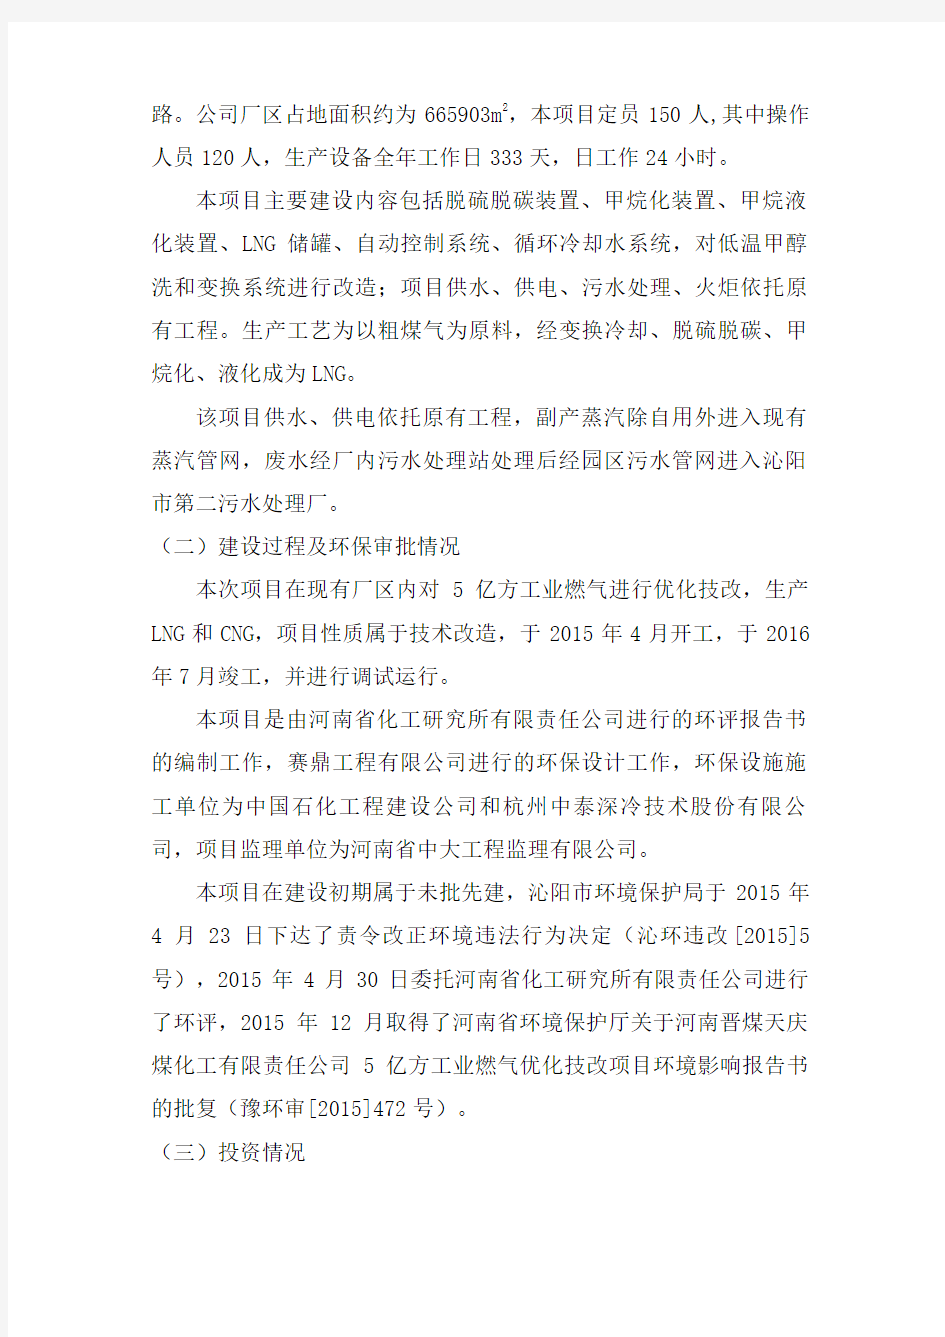 河南晋煤天庆煤化工有限责任公司5亿方工业燃气优化技改项目竣工环境知识交流